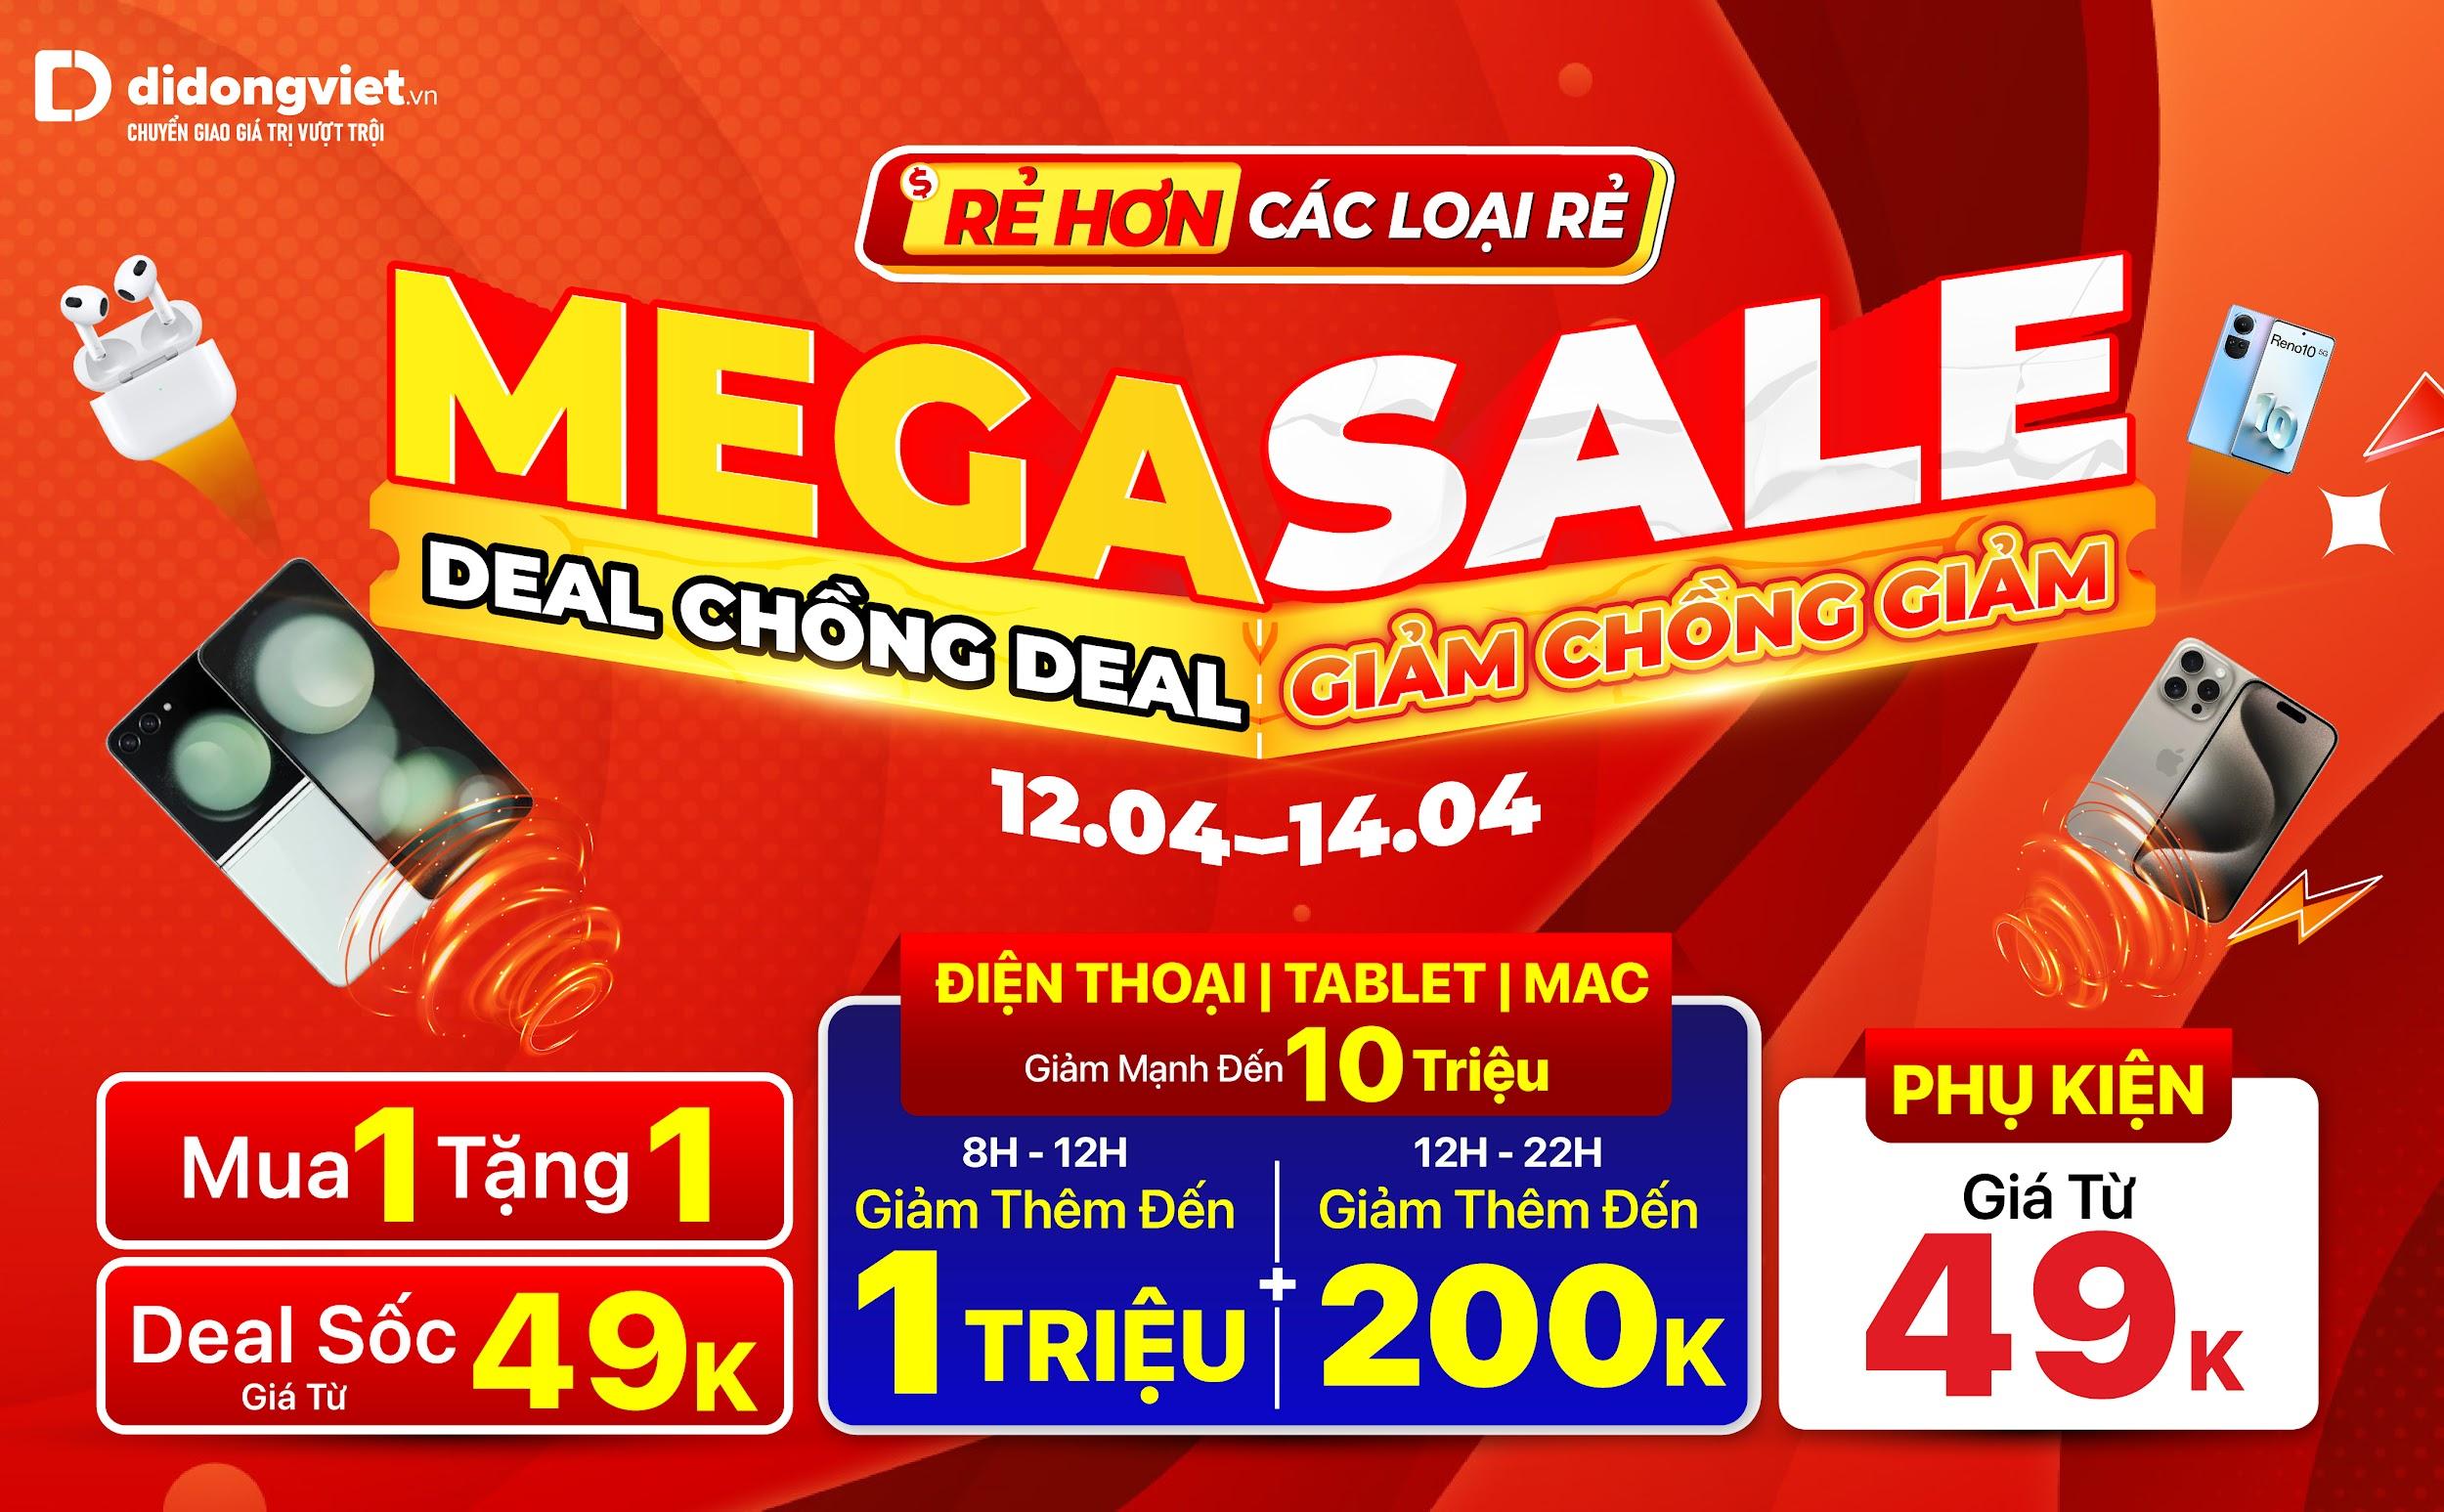 Mega Sale tháng 4: Điện thoại giảm đến 10 triệu đồng, tặng Galaxy Fit 3 0Đ, deal chồng deal giảm thêm đến 1 triệu đồng - 1